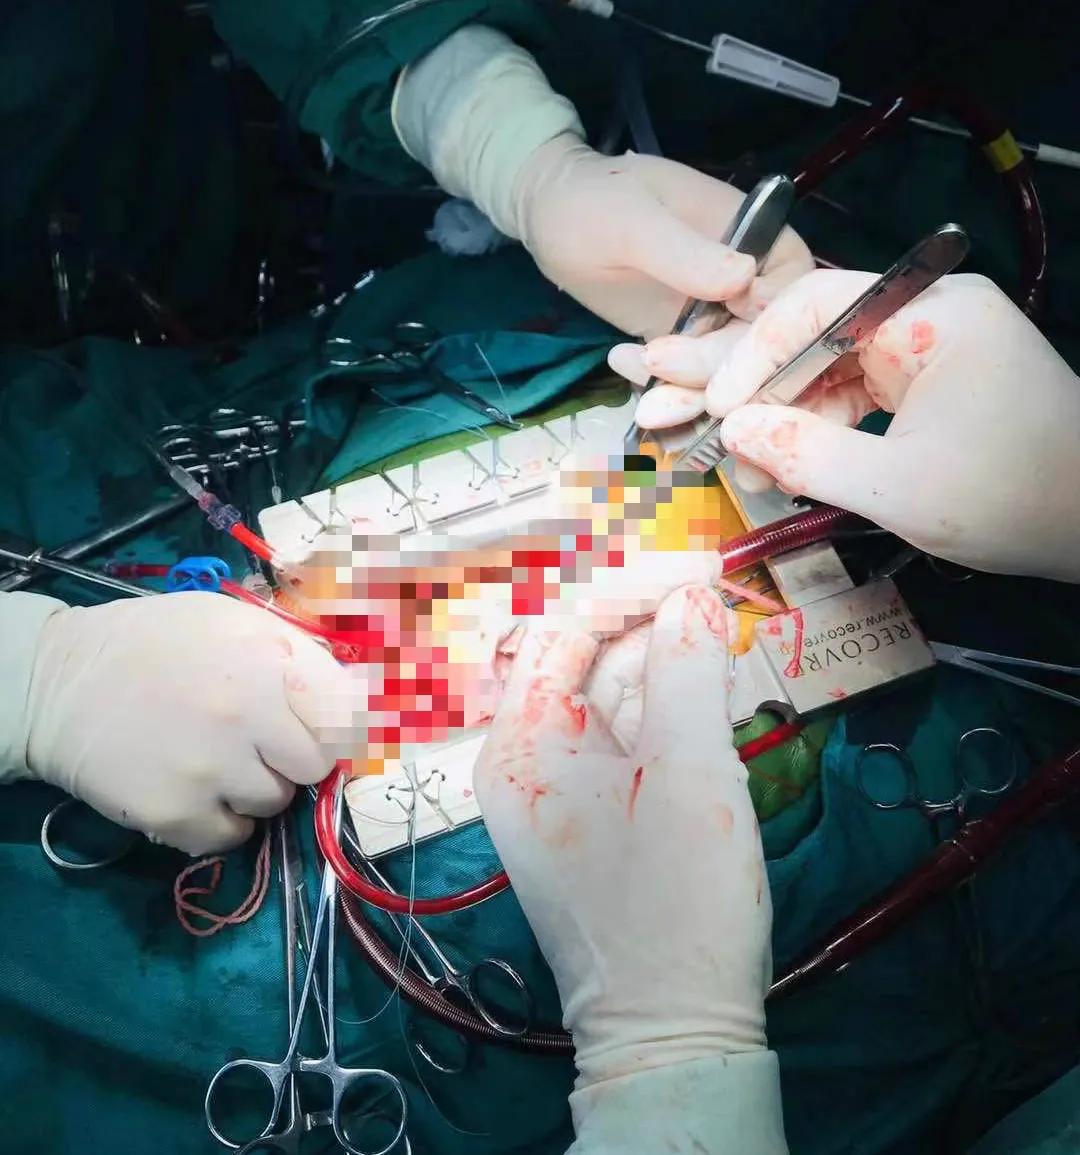 南京江北人民医院万峰心脏团队成功完成一例左心房巨大粘液瘤摘除